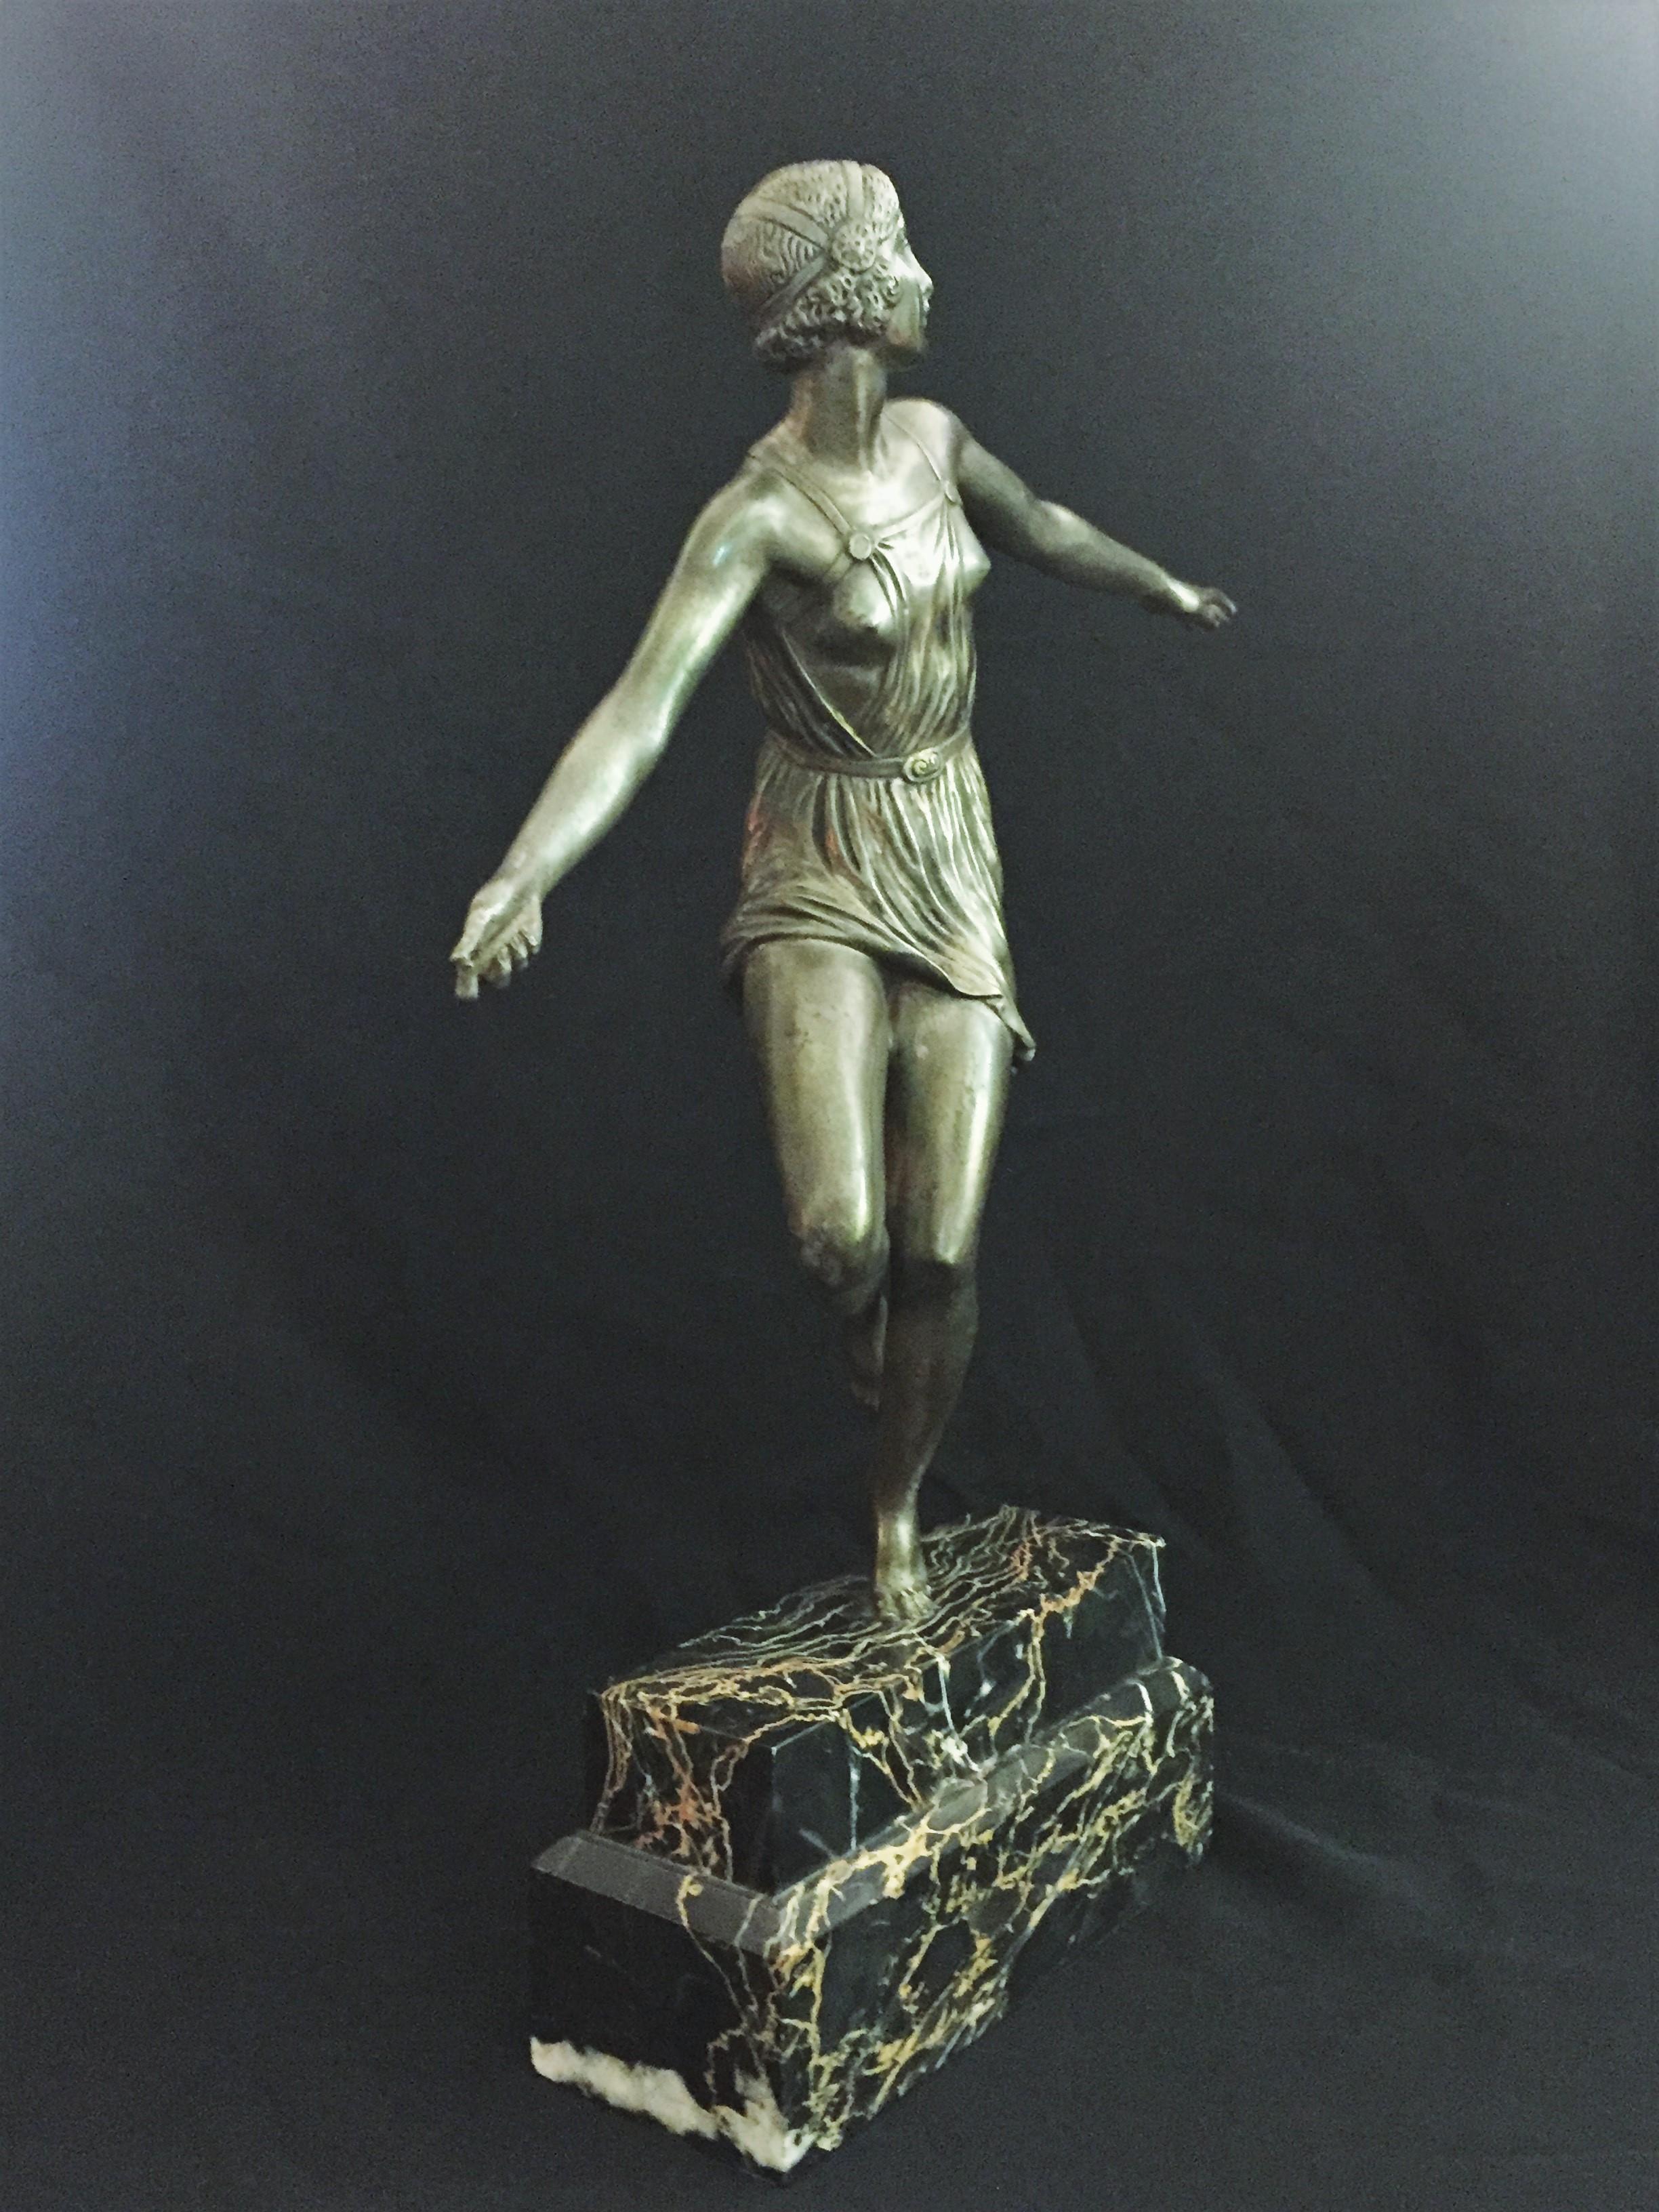 Wunderschöne große französische versilberte Bronzeskulptur einer halbnackten erotischen Tänzerin, in der Bronze signiert: Josselin.

Original Portorro-Marmorsockel. 

Abmessungen: H 15,25